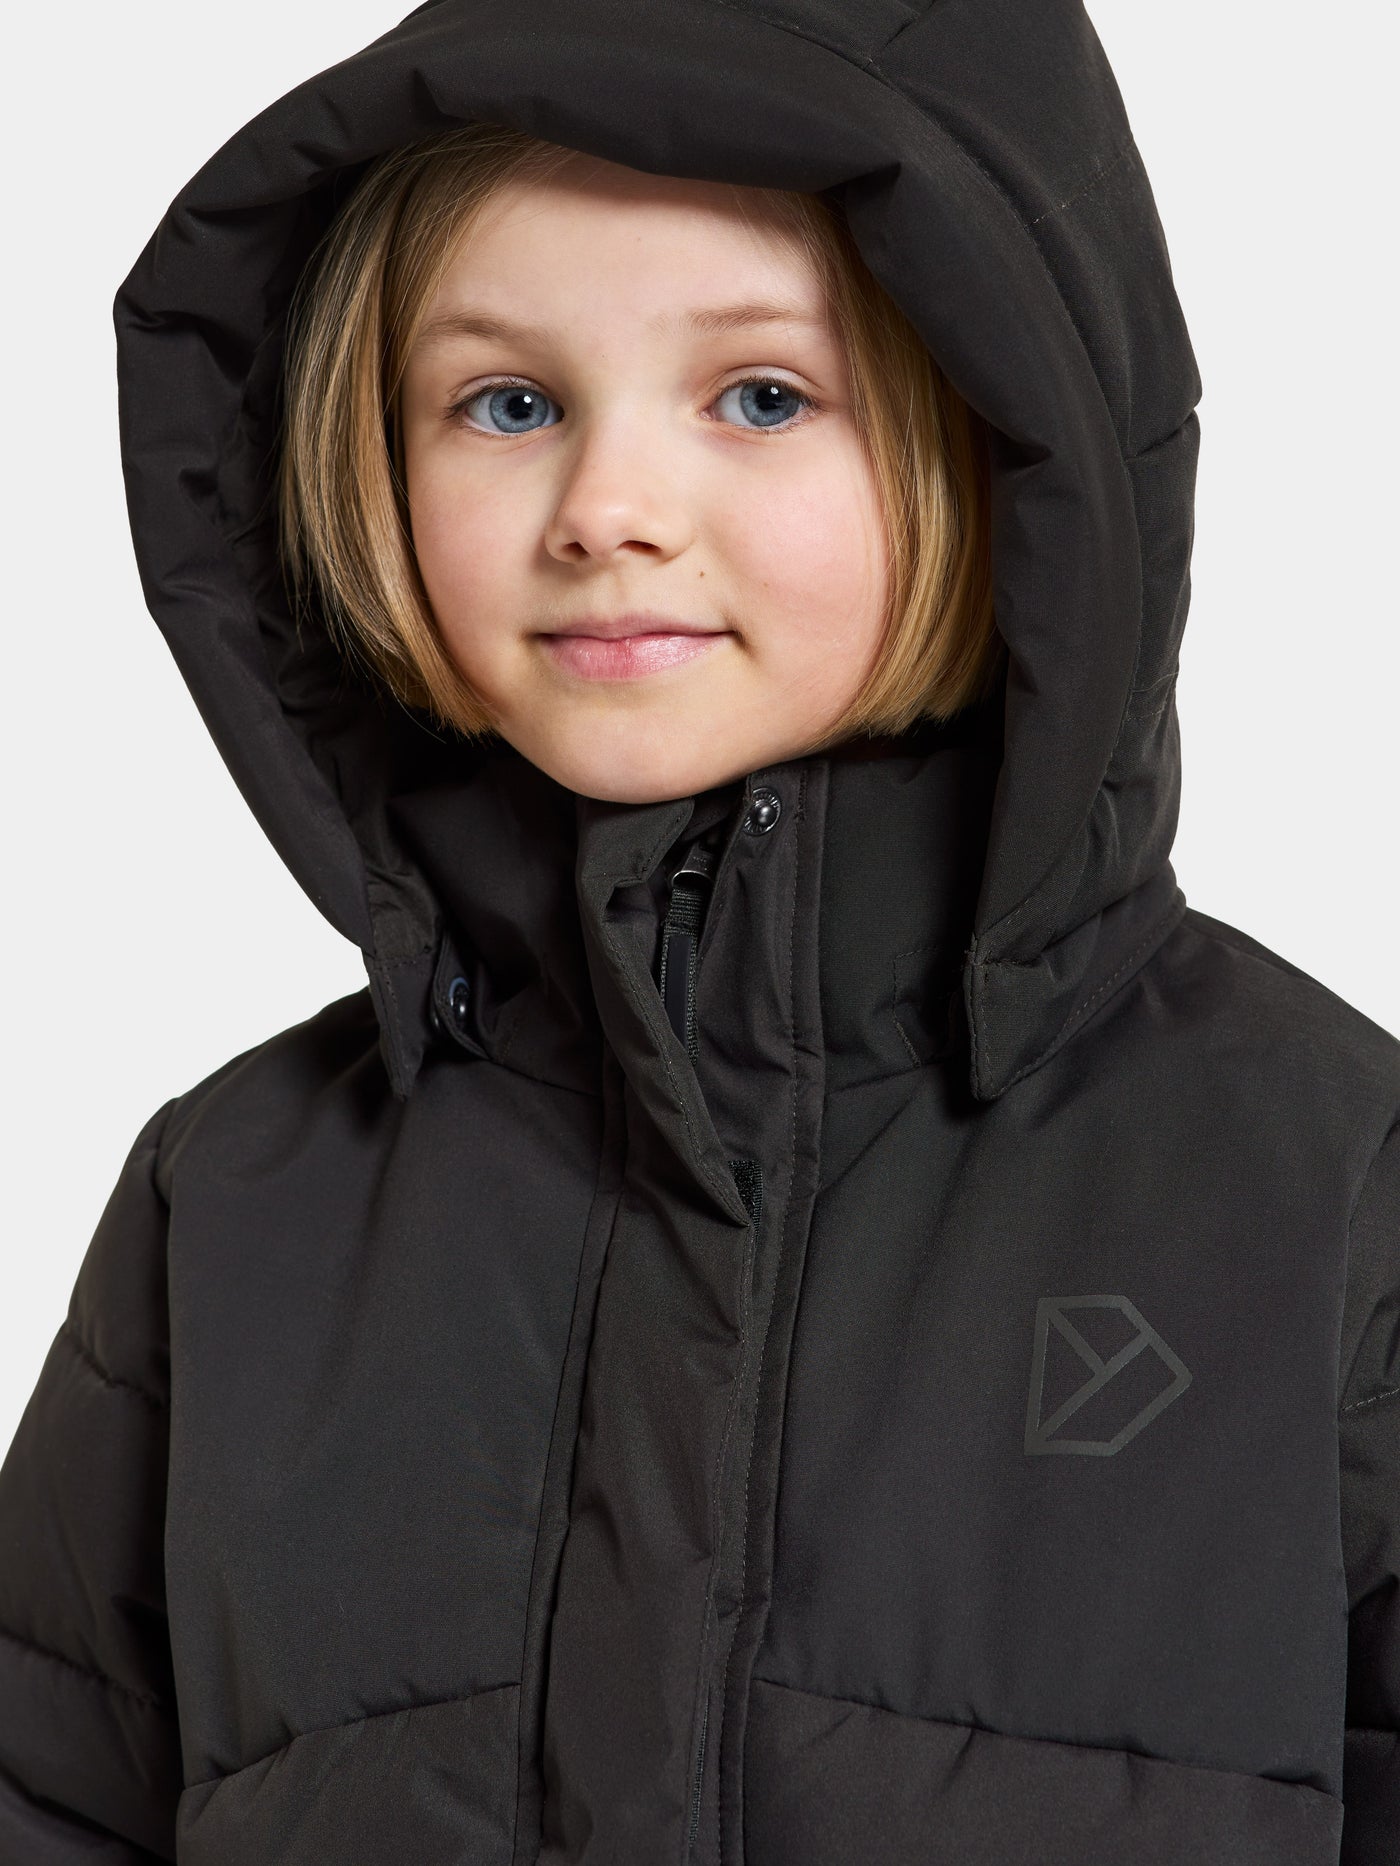 Ryolit Kids' Jacket - Top-Jacke für Kinder und Jugendliche